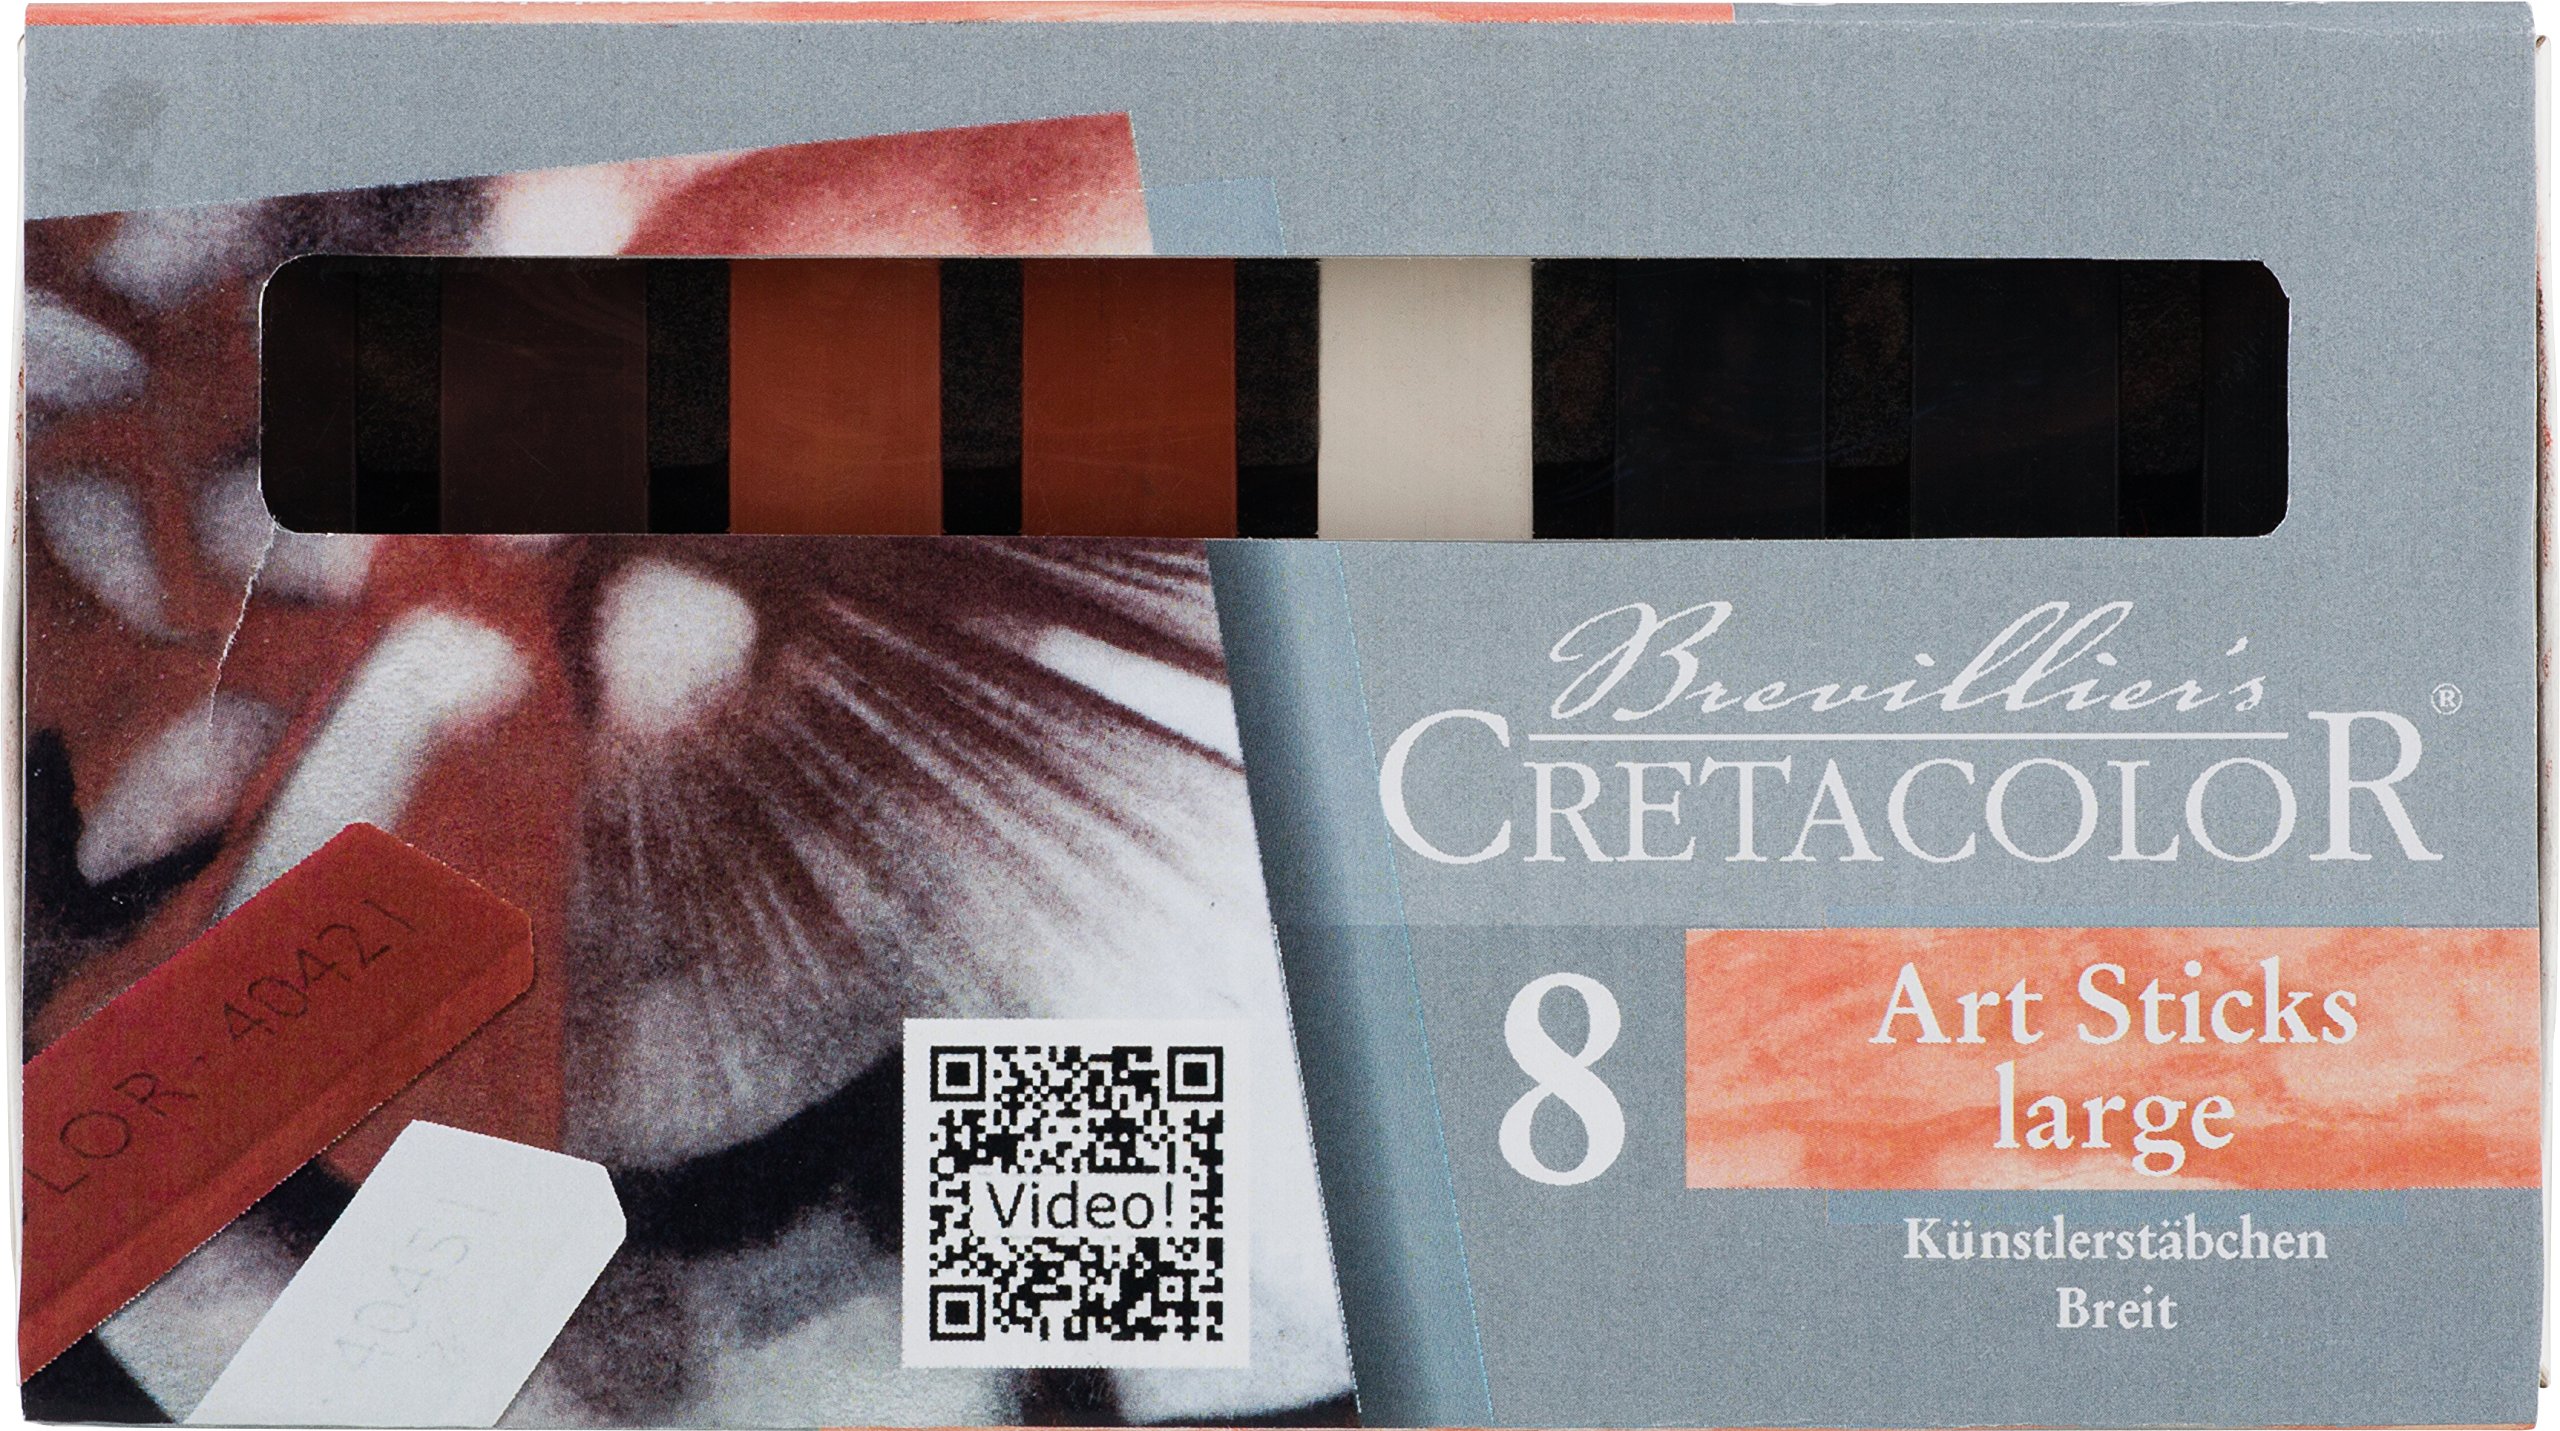 Cretacolor Künstlerstäbchen breit sort, 8er Packung